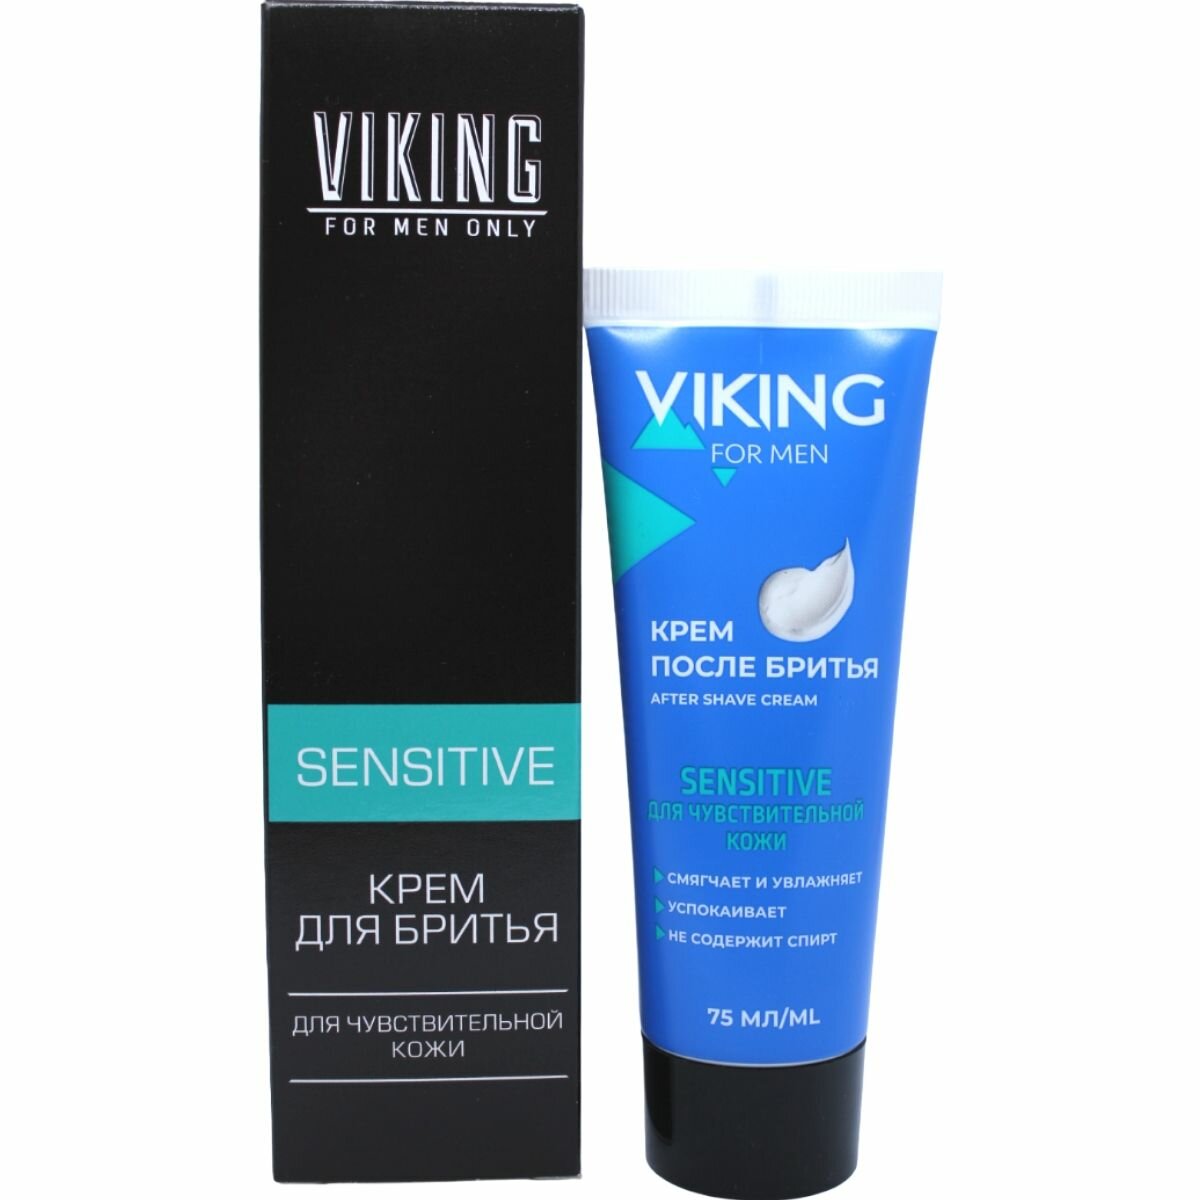 Набор викинг крем для бритья для чувствительной кожи Sensitive 75 мл + крем после бритья для чувствительной кожи Sensitive 75 мл